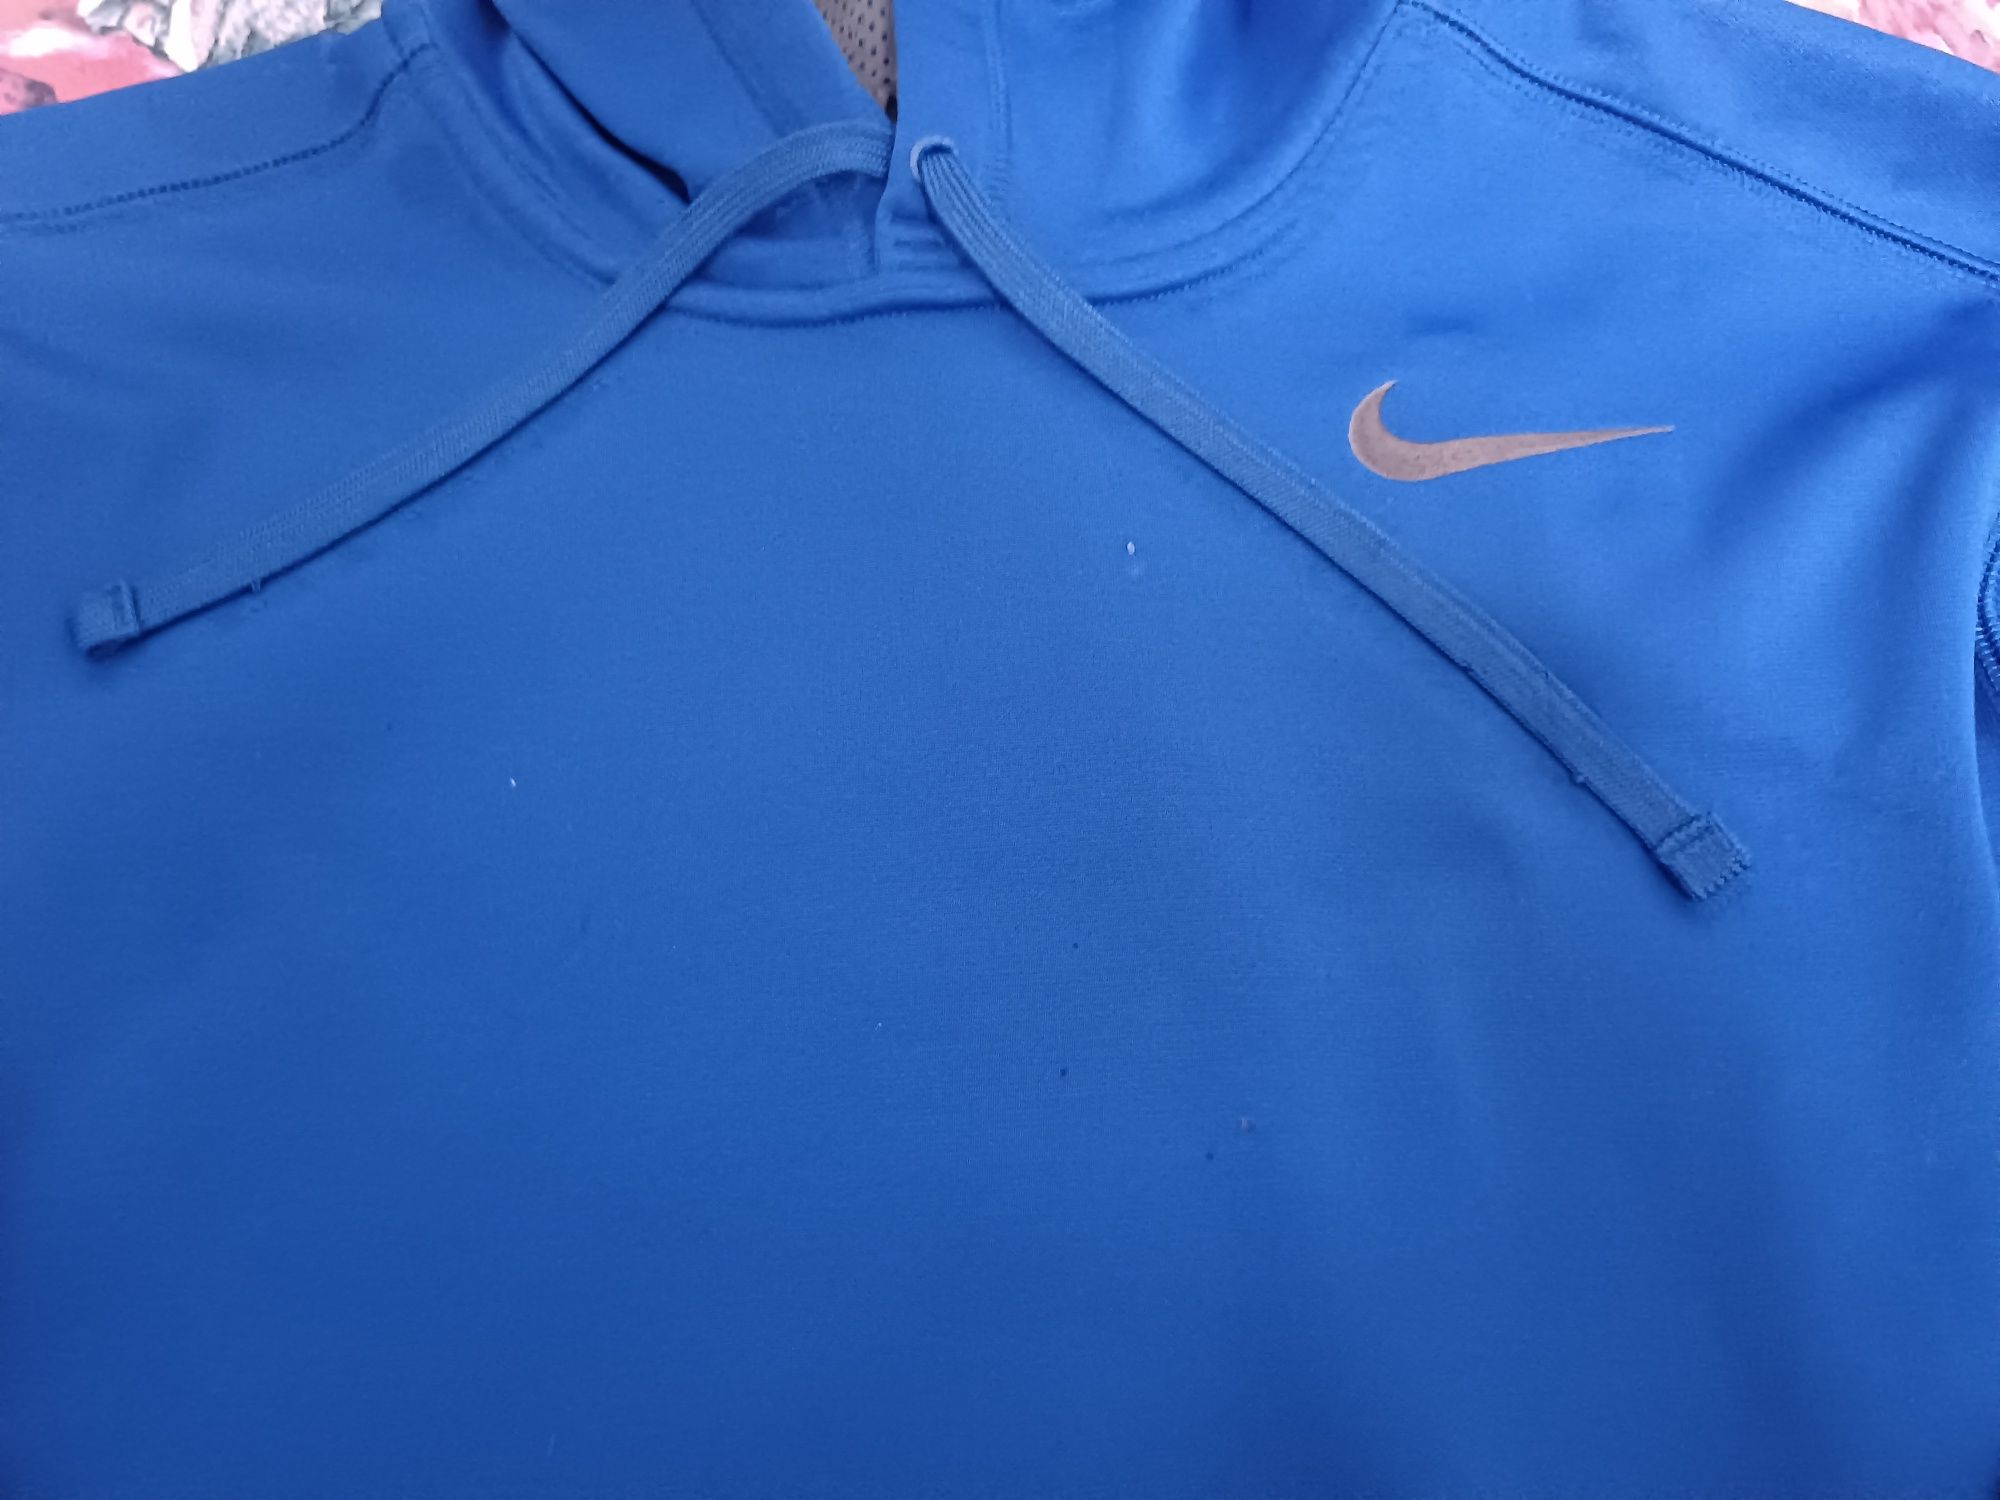 Bluza Nike rozmiar L